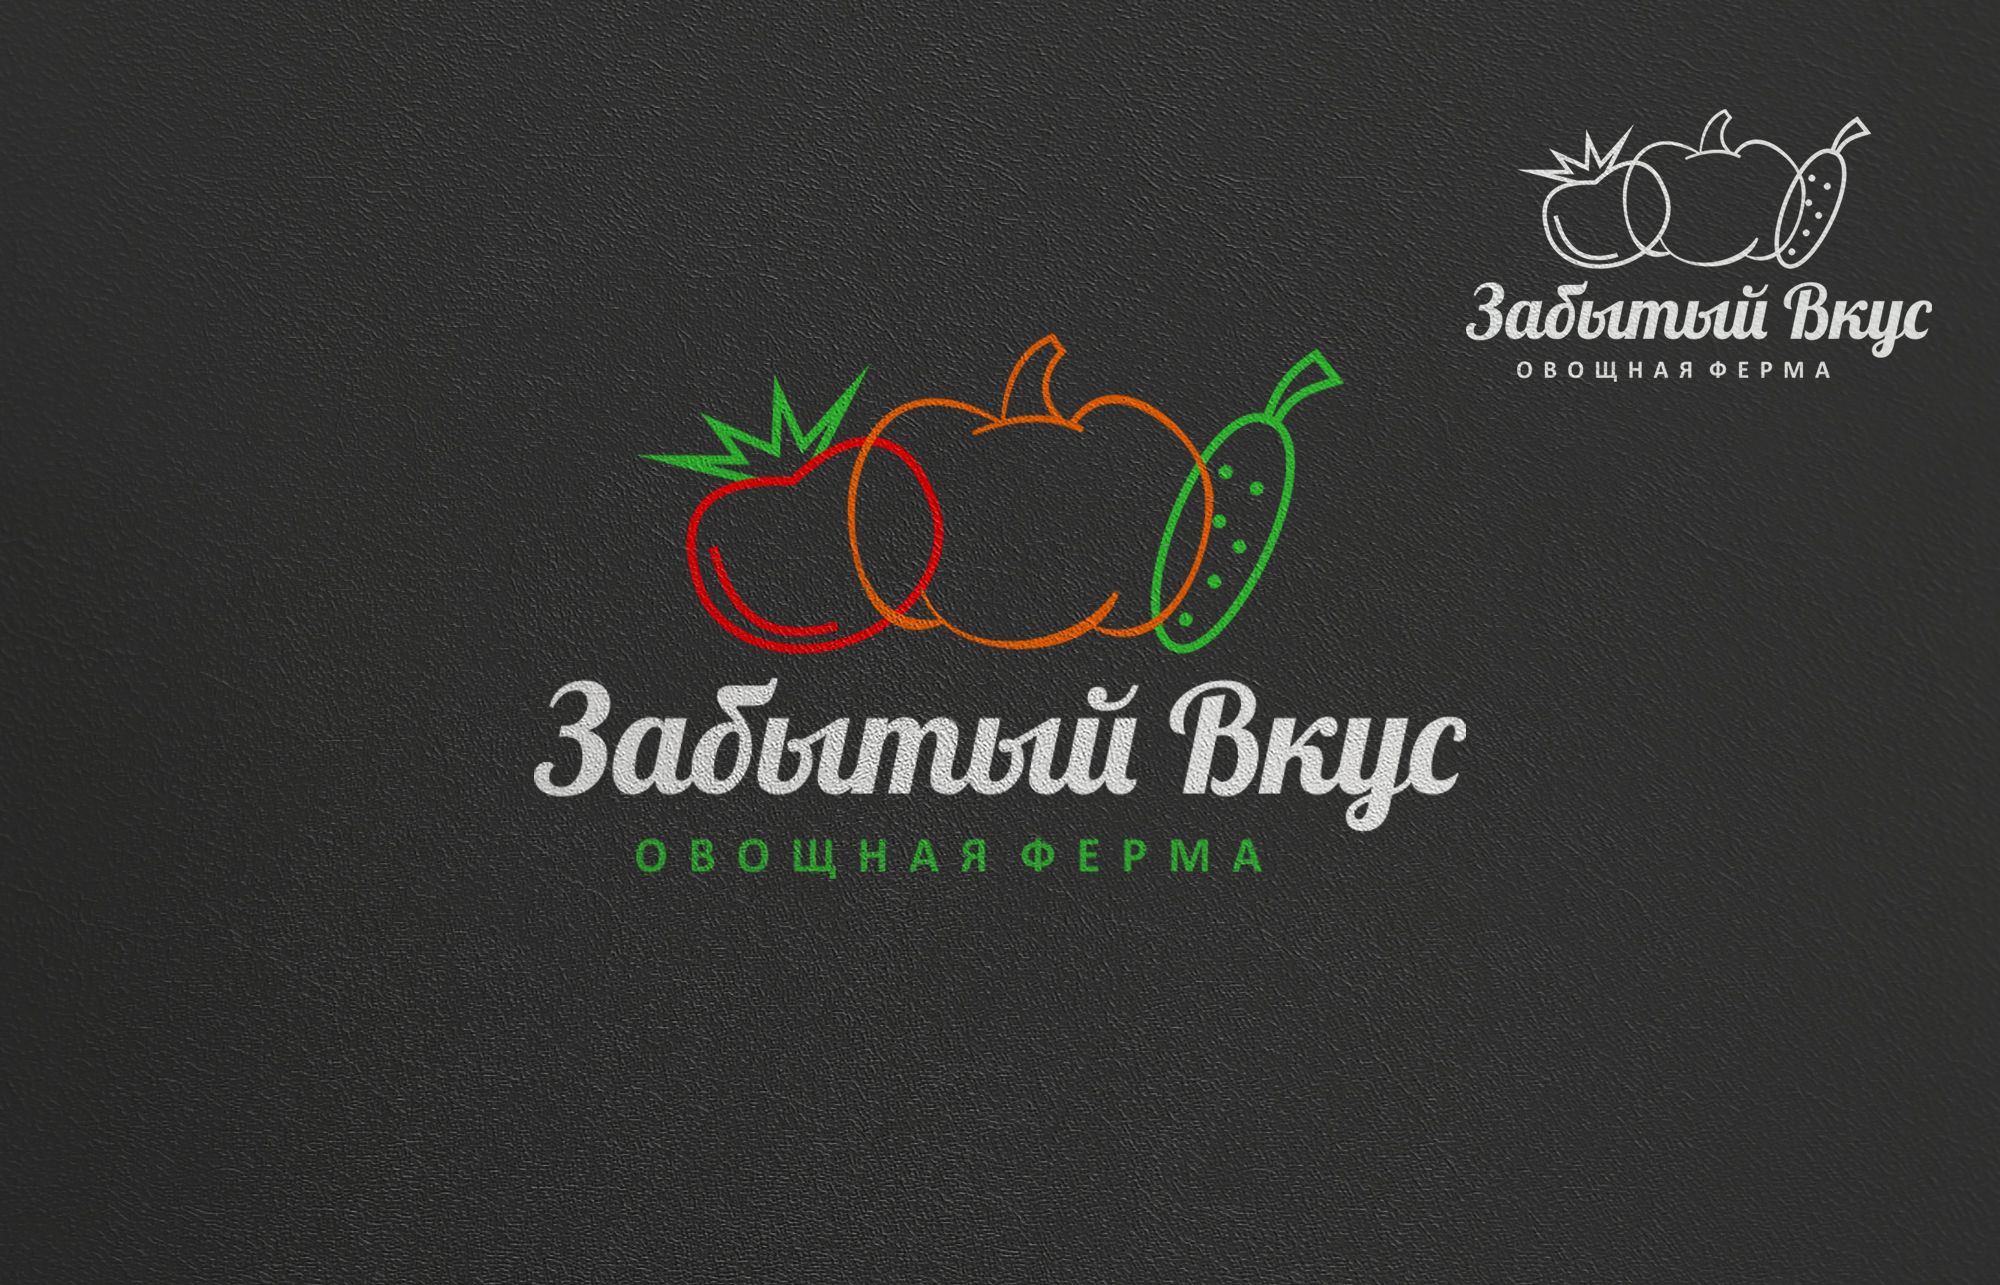 Лого и фирменный стиль для Овощная ферма Забытый Вкус - дизайнер serz4868